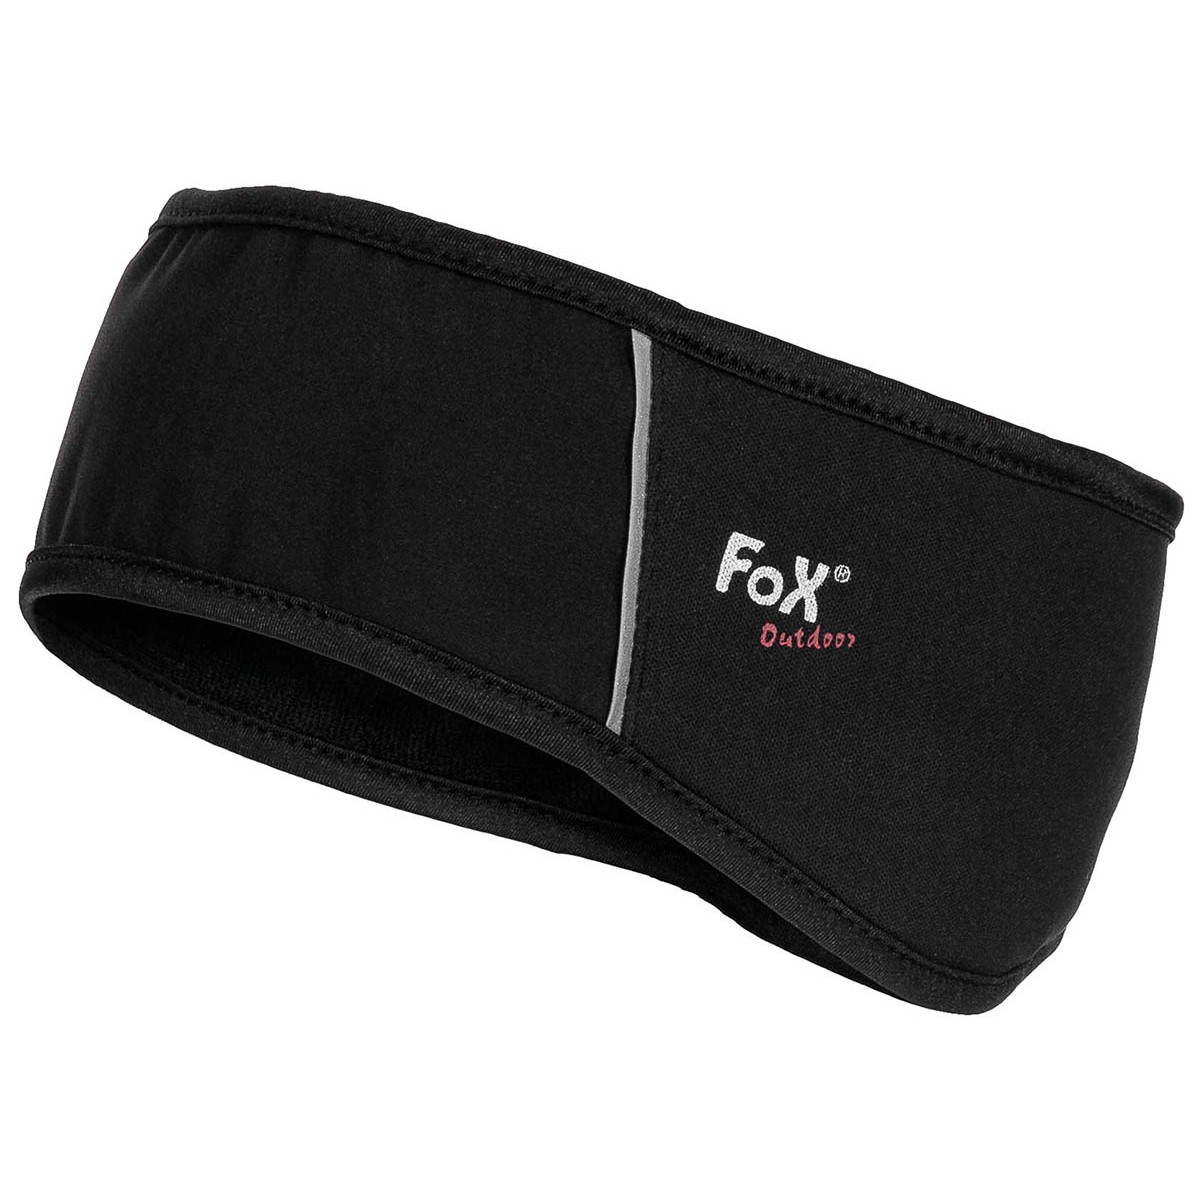 Čelenka softshellová Fox Soft Shell - černá, S/M